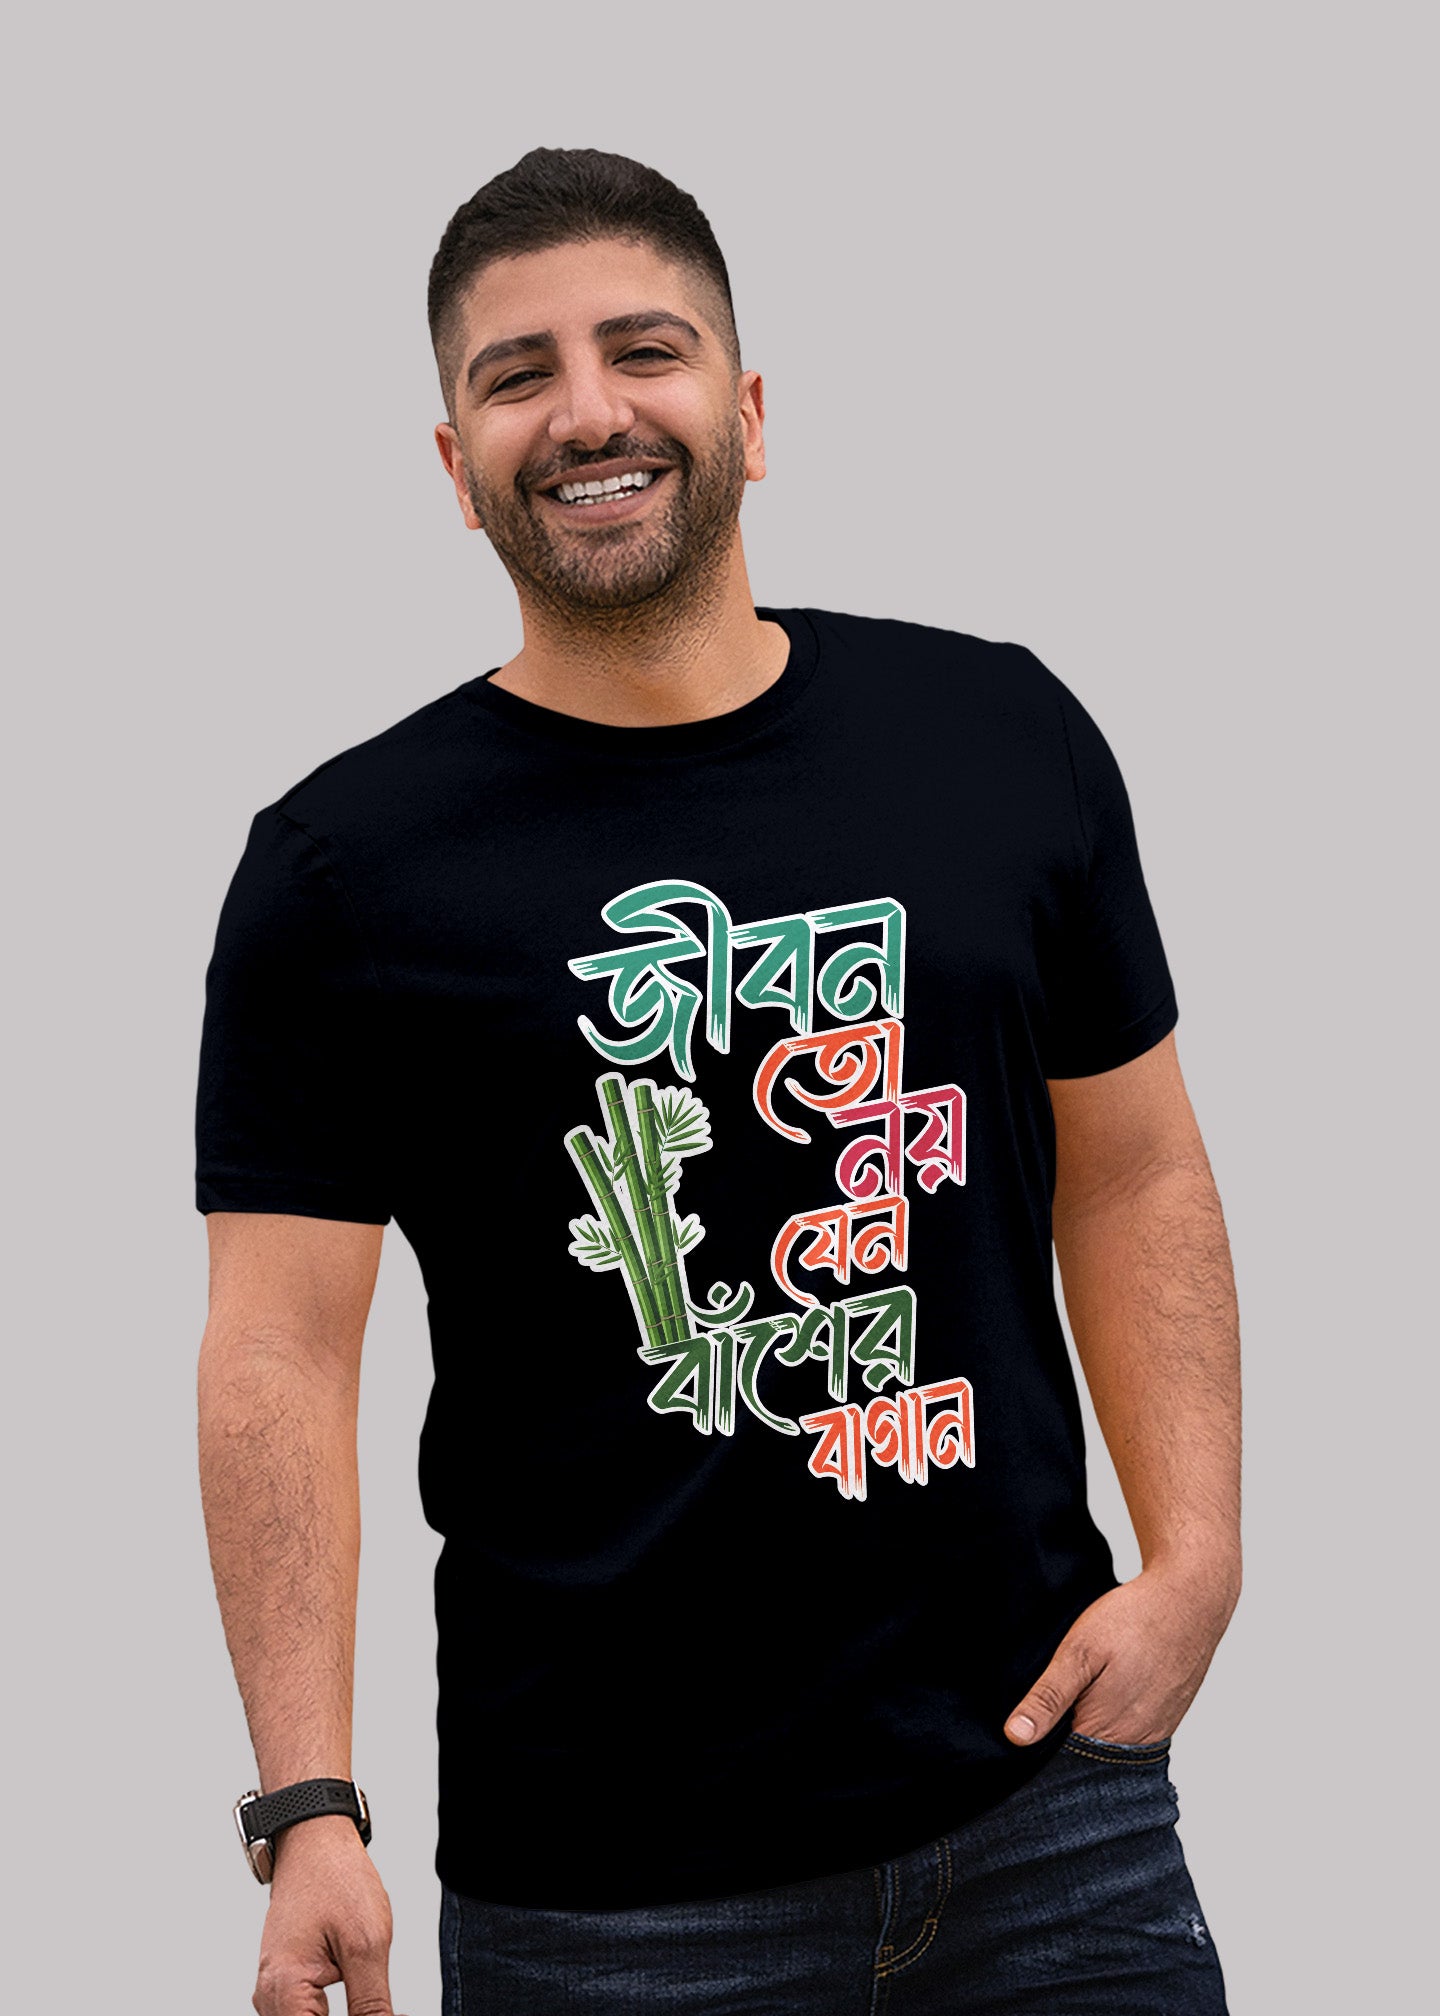 Jibon to noy jano baser bagan bengali Printed Half Sleeve Premium Cotton T-shirt For Men